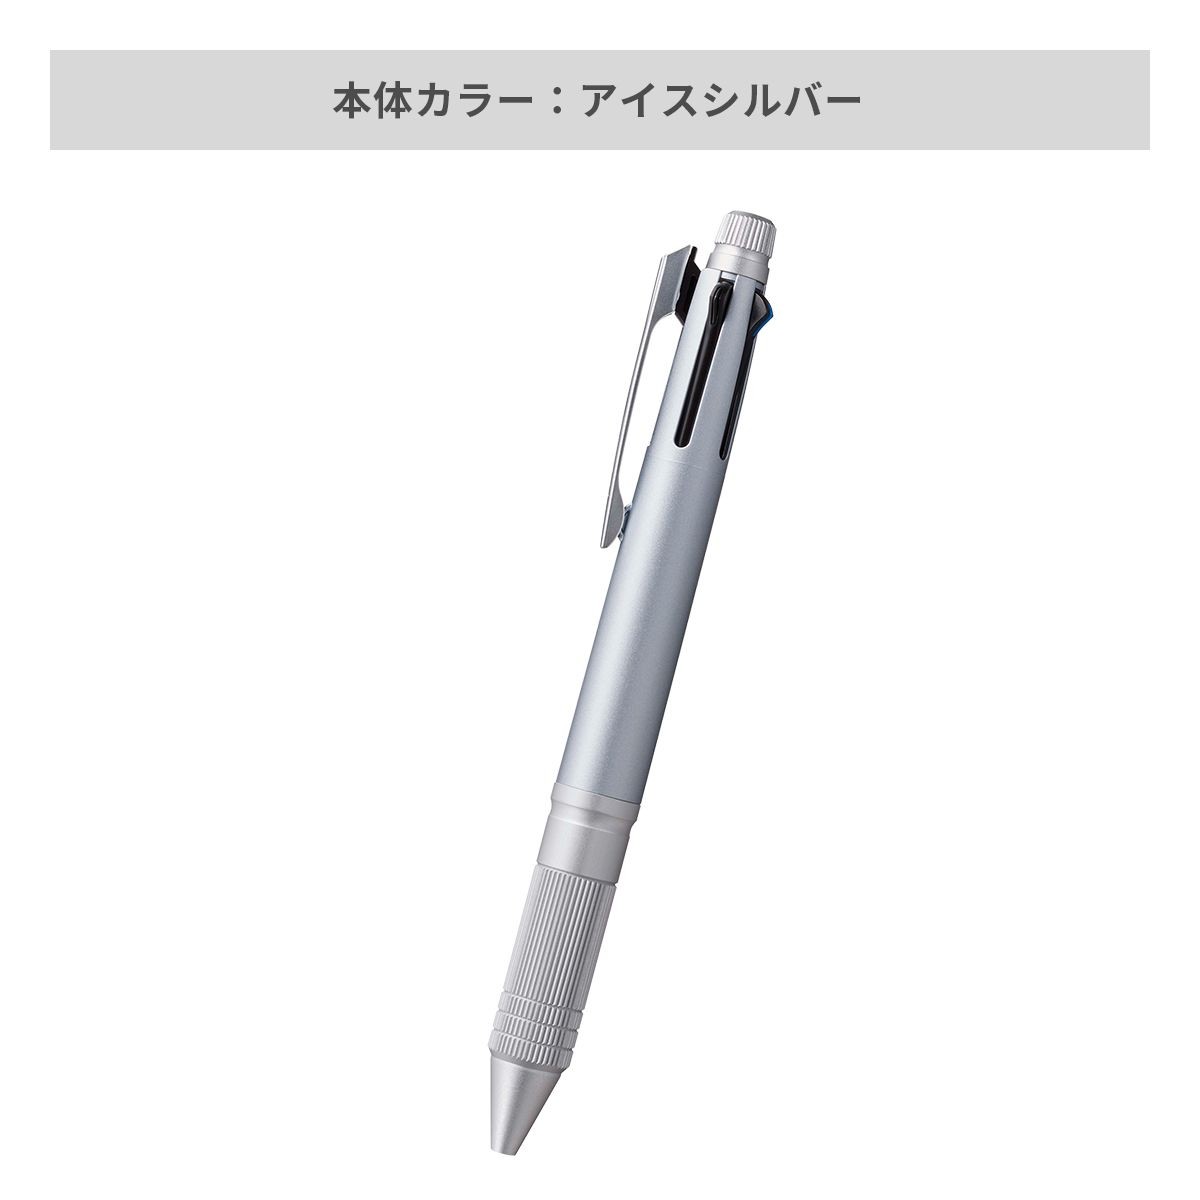 三菱鉛筆 ジェットストリーム メタルエディション 多機能ペン 4&1 0.5mm【多機能ペン / パッド印刷】 画像4